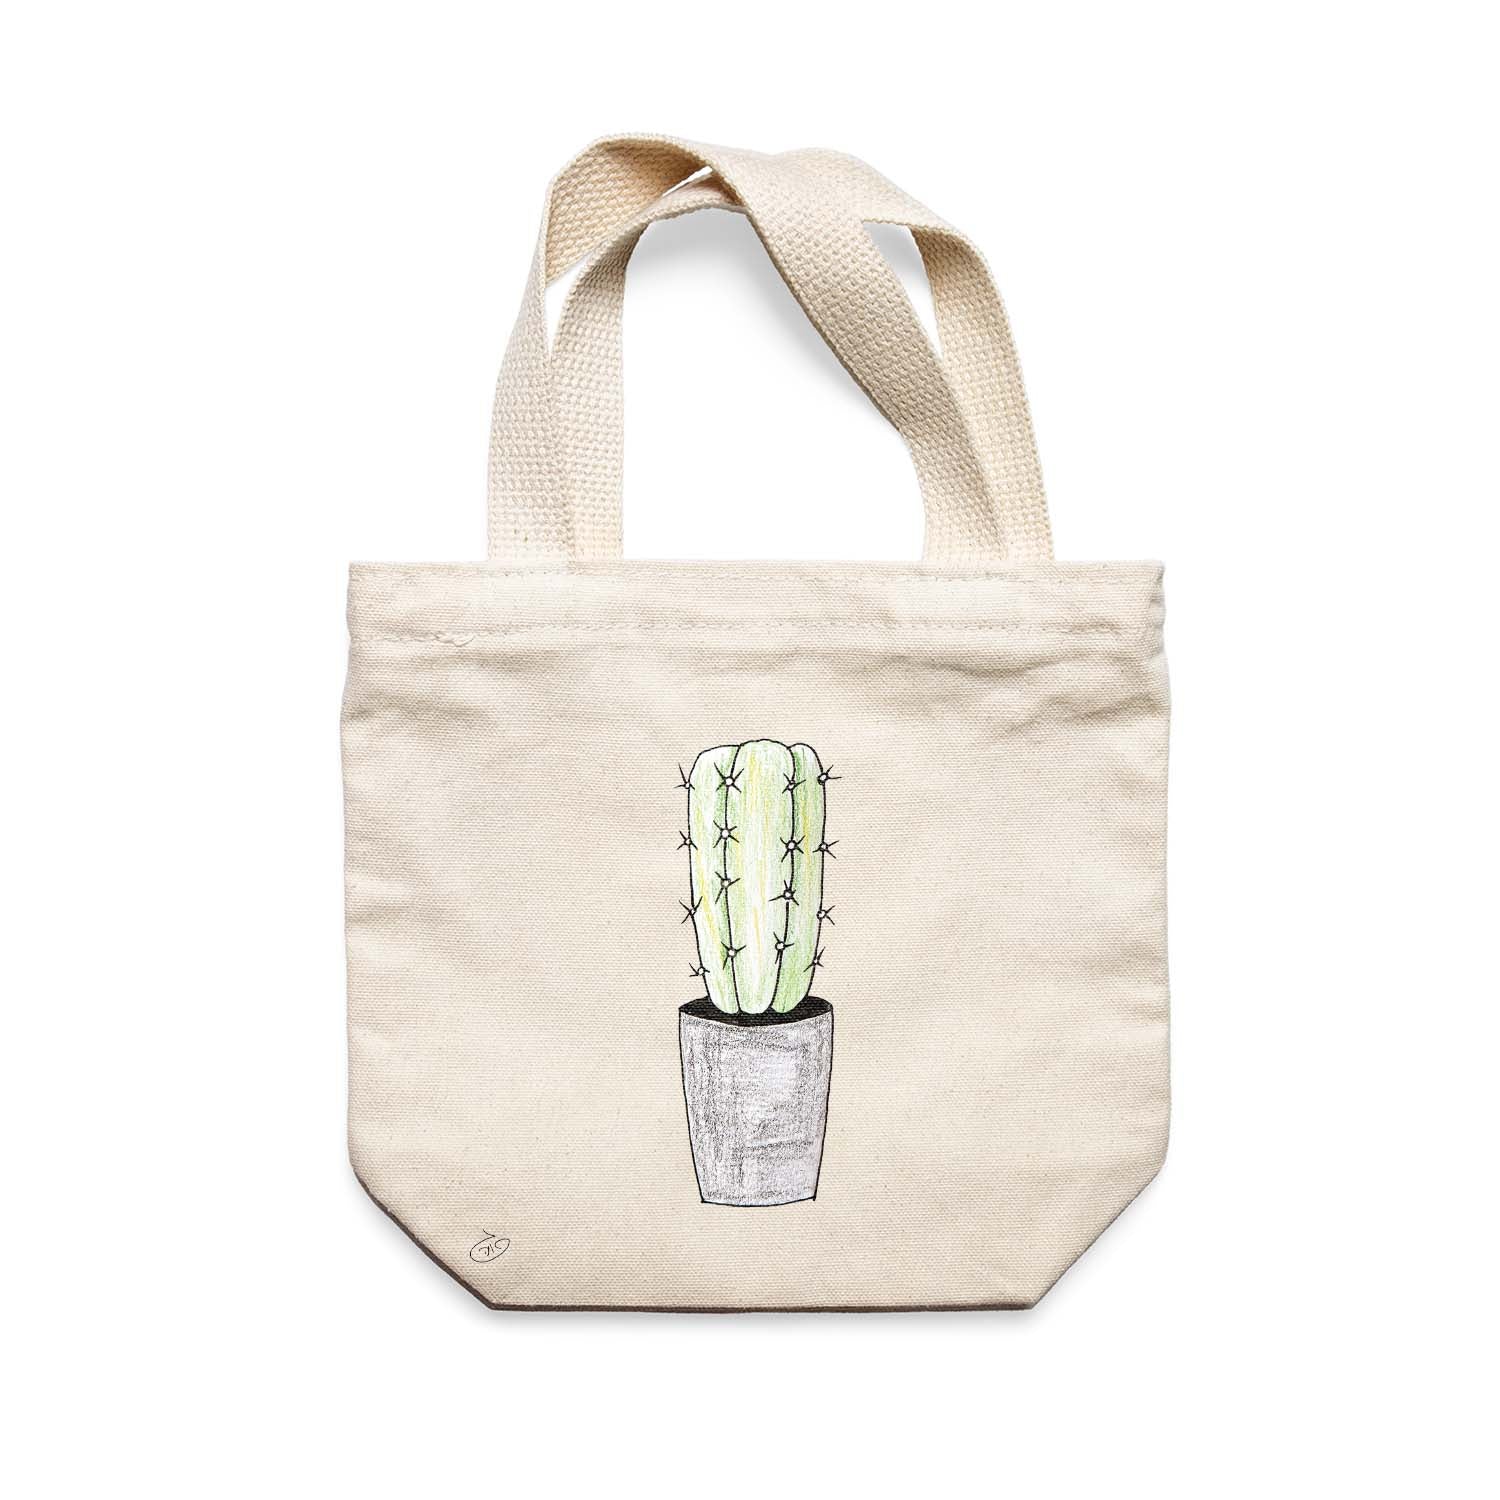 תיק צד לנשים וגברים מבד 100% כותנה טבעית בעיצוב Succulent Cactus Tote Bag מציור מקורי של גאיה